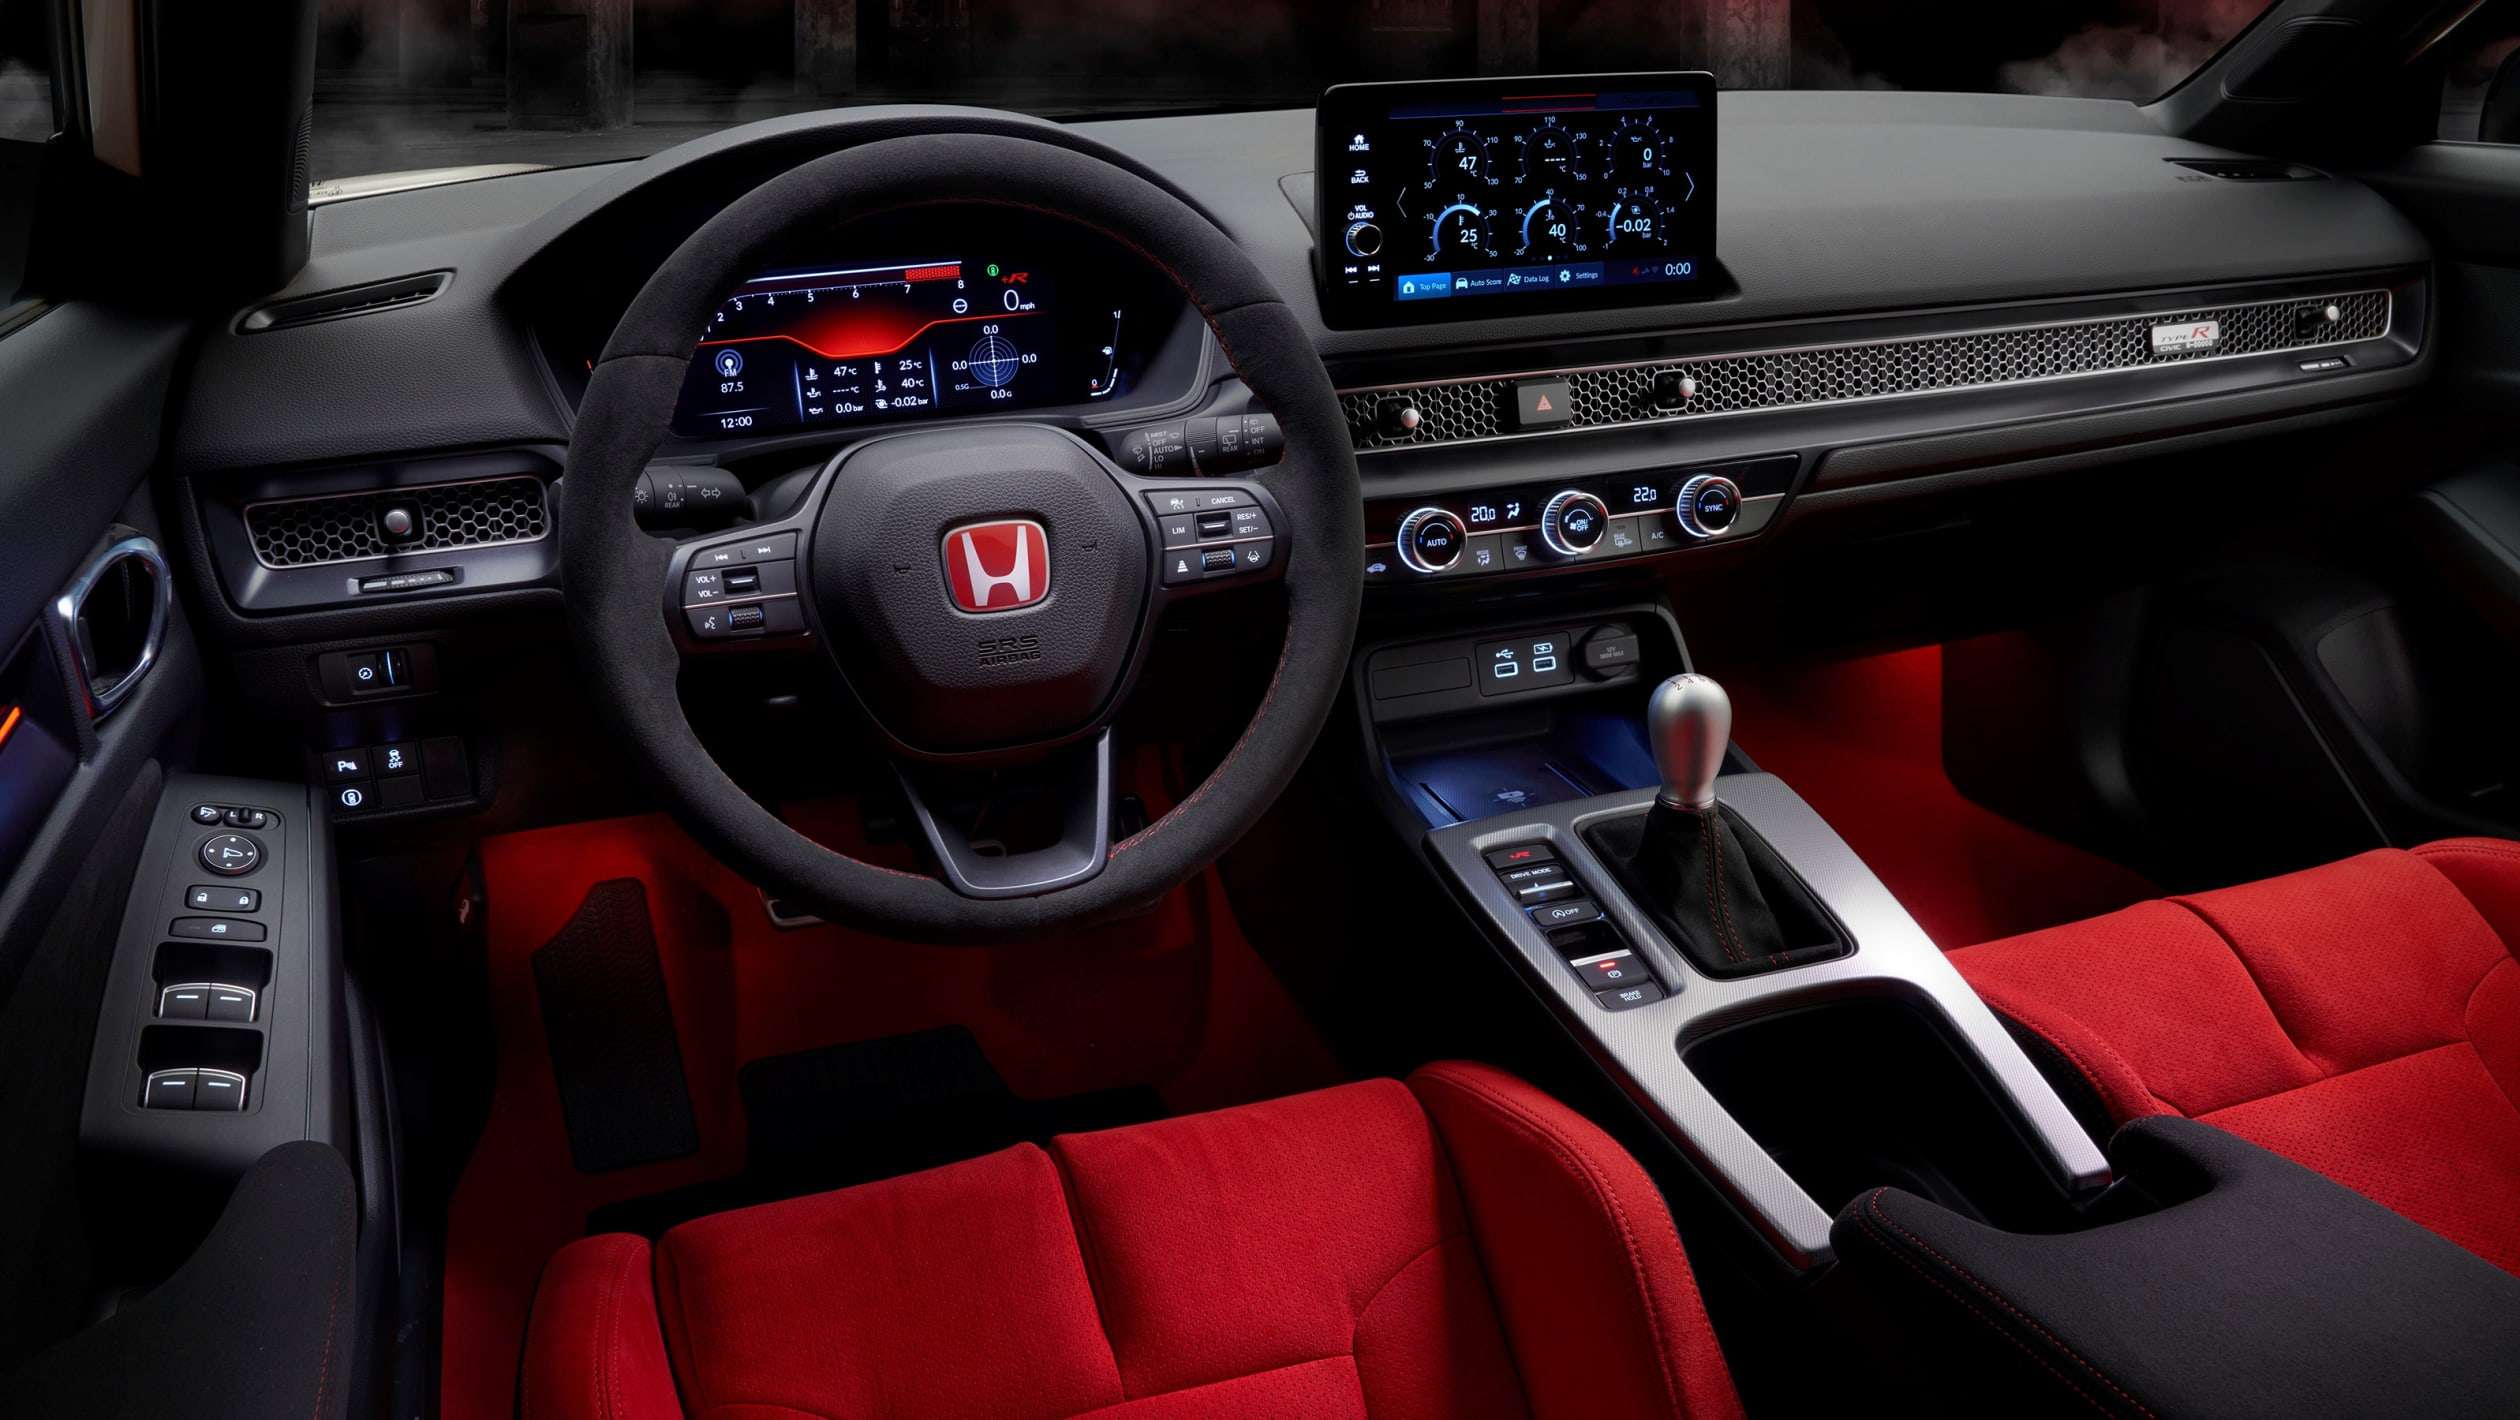 New 2023 Honda Civic Type R - Dash